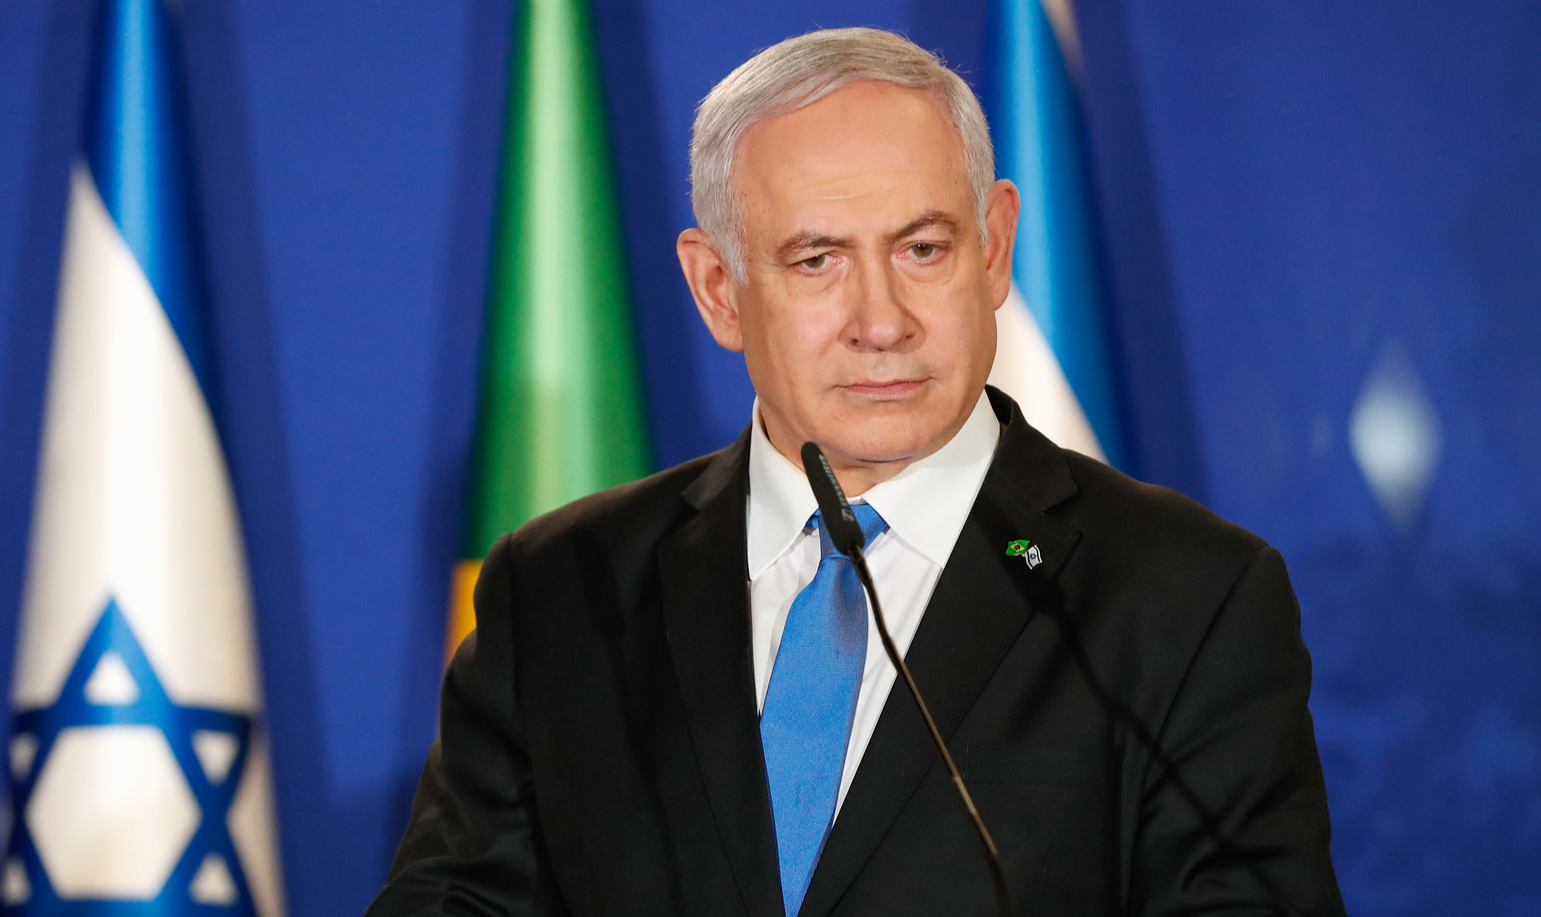 Projeto vai permitir ao governo de Netanyahu exercer um poder sem controle e eliminar a proteção dos direitos individuais e das minorias